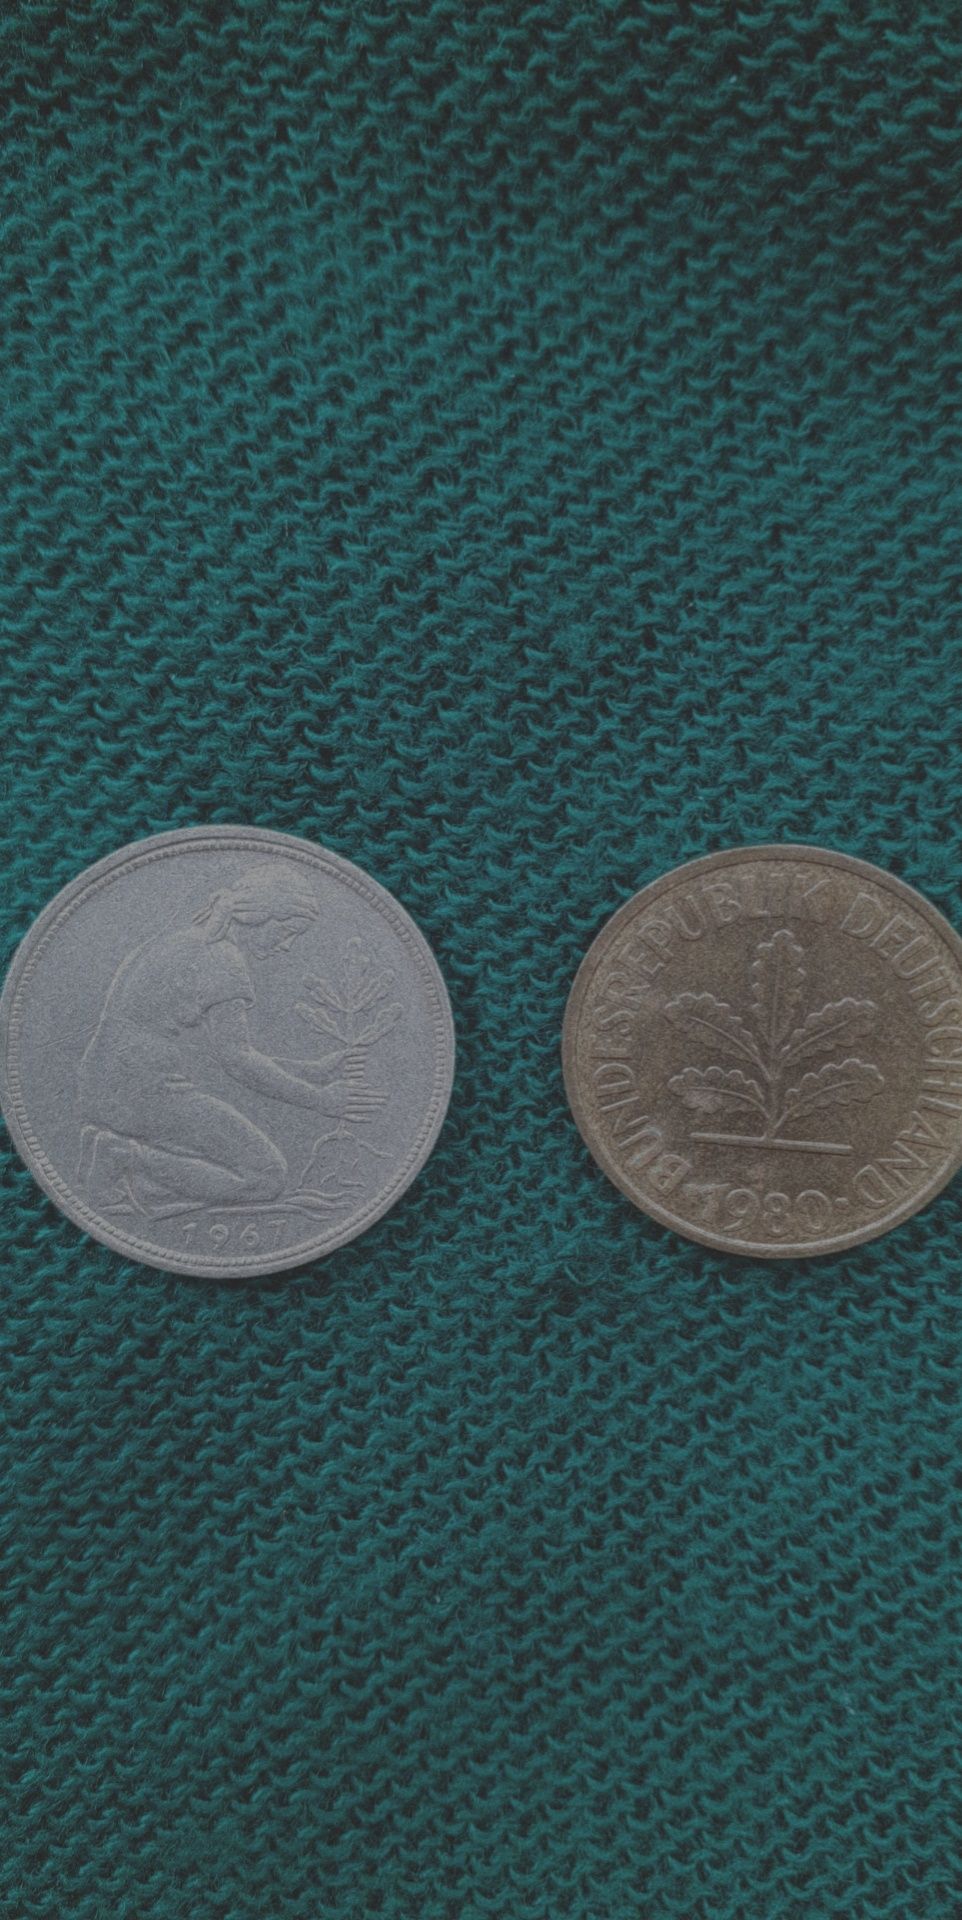 50 Pfennig (1967), 5 Pfennig (1980).